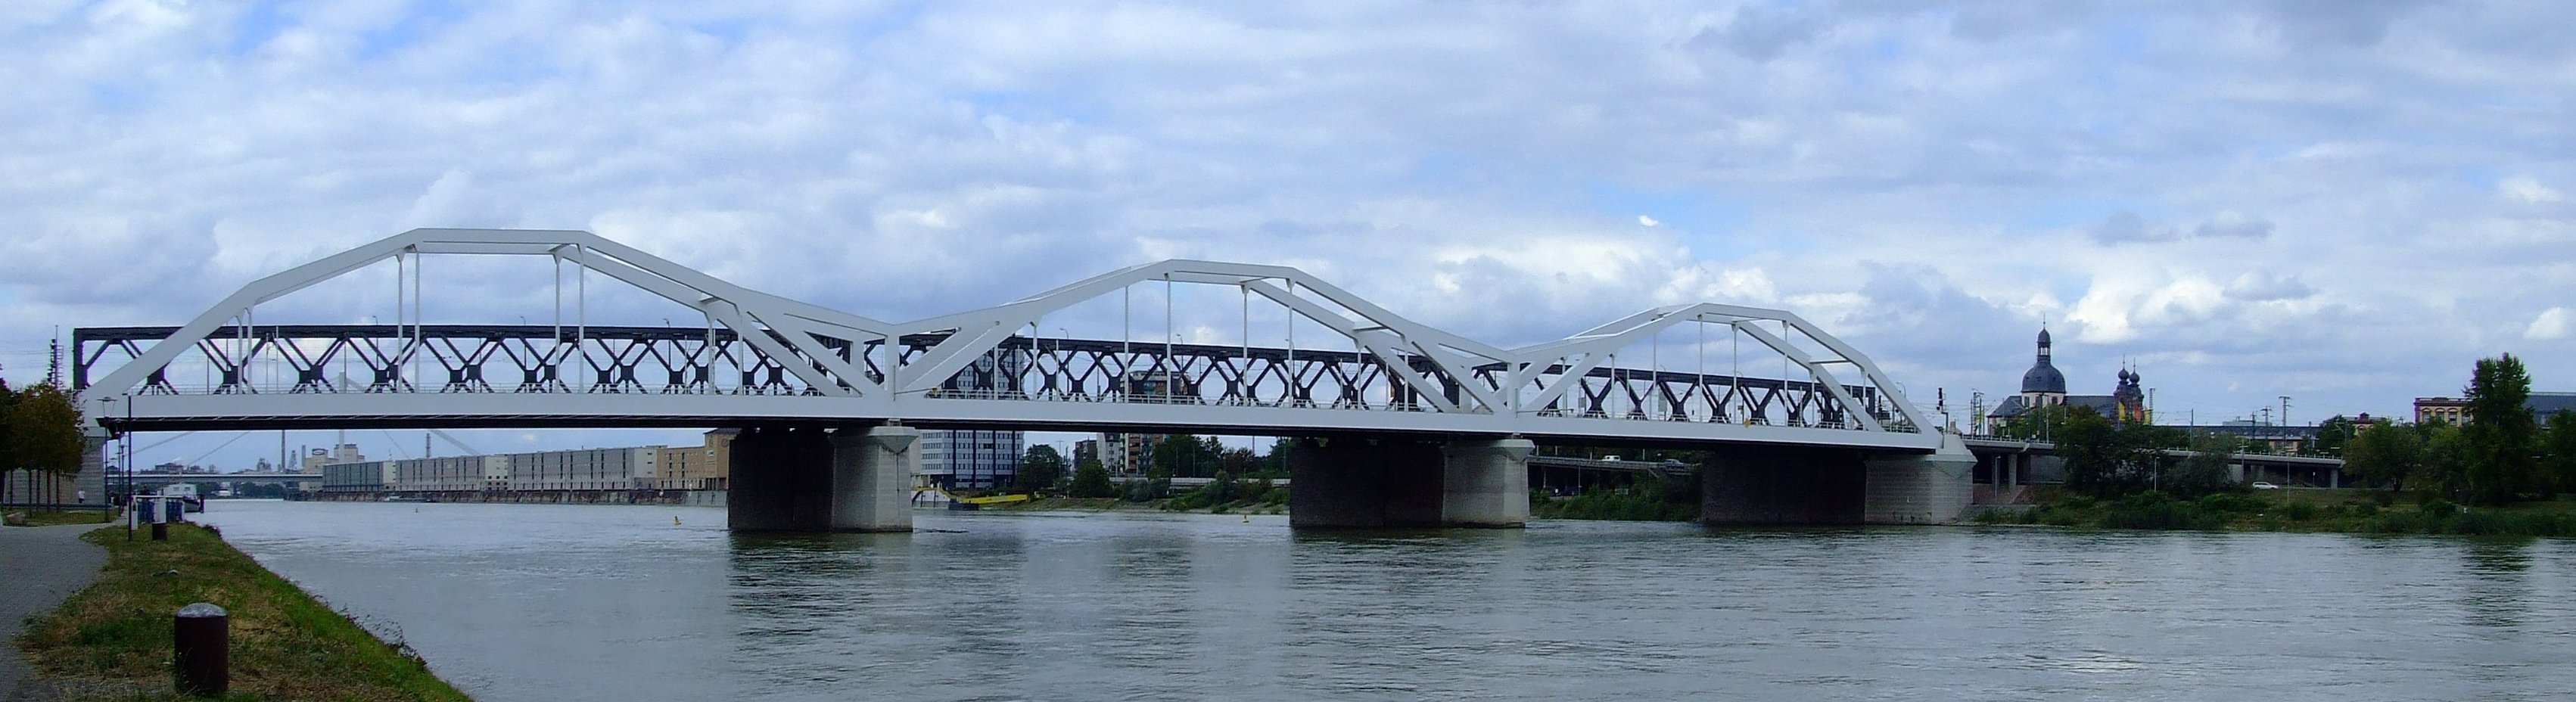 Panoramaaufnahme der Konrad-Adenauer-Brücke zwischen Mannheim und Ludwigshafen über den Rhein